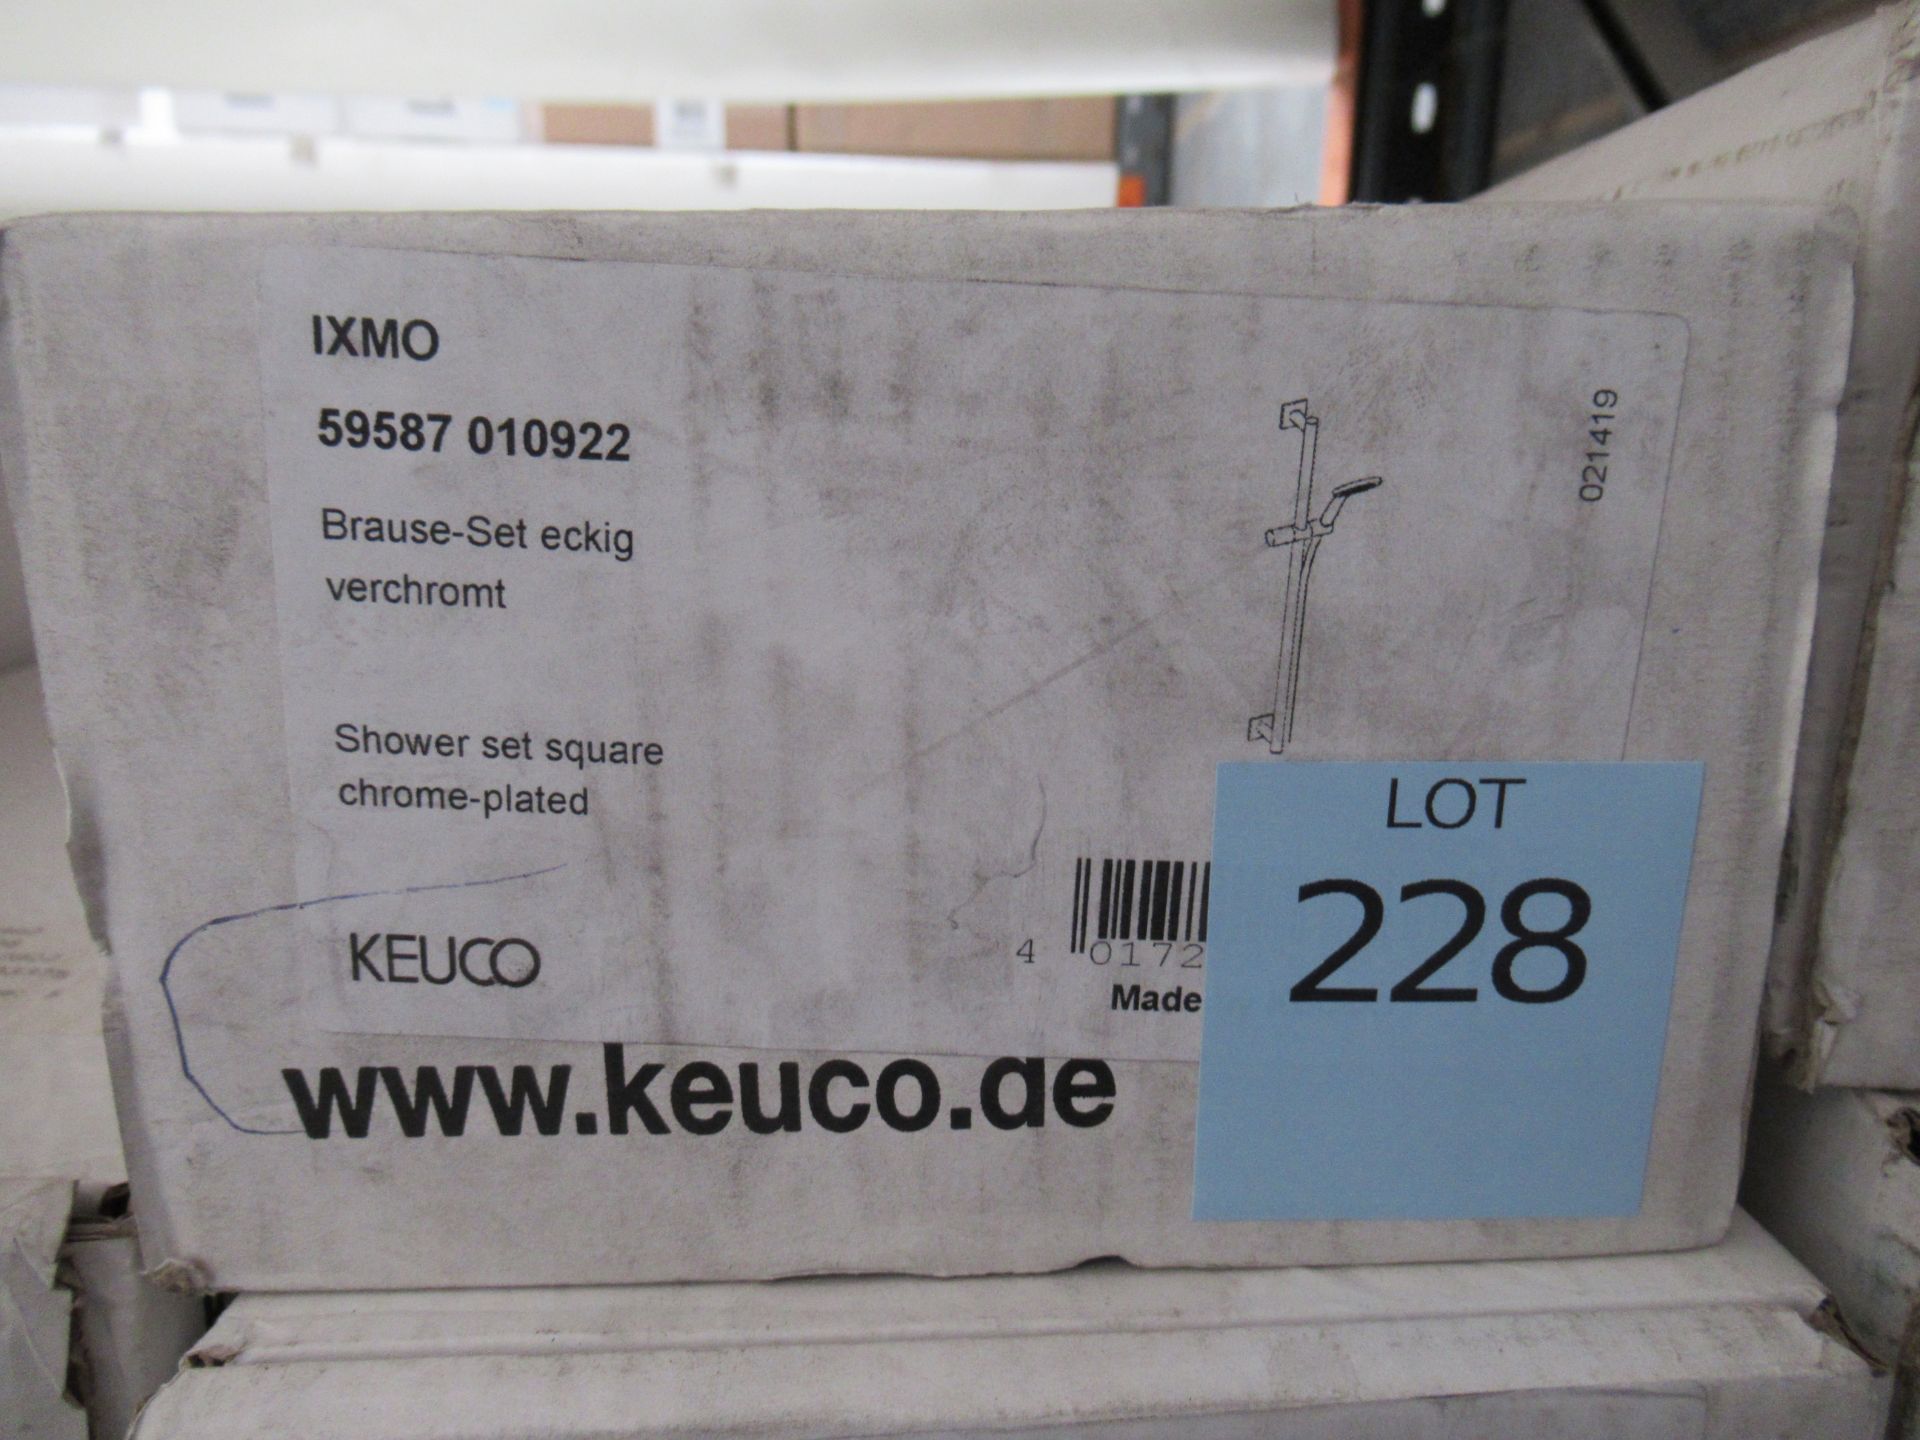 A Keuco IXMO Shower Set Square Chrome Plated, P/N 59587-010922